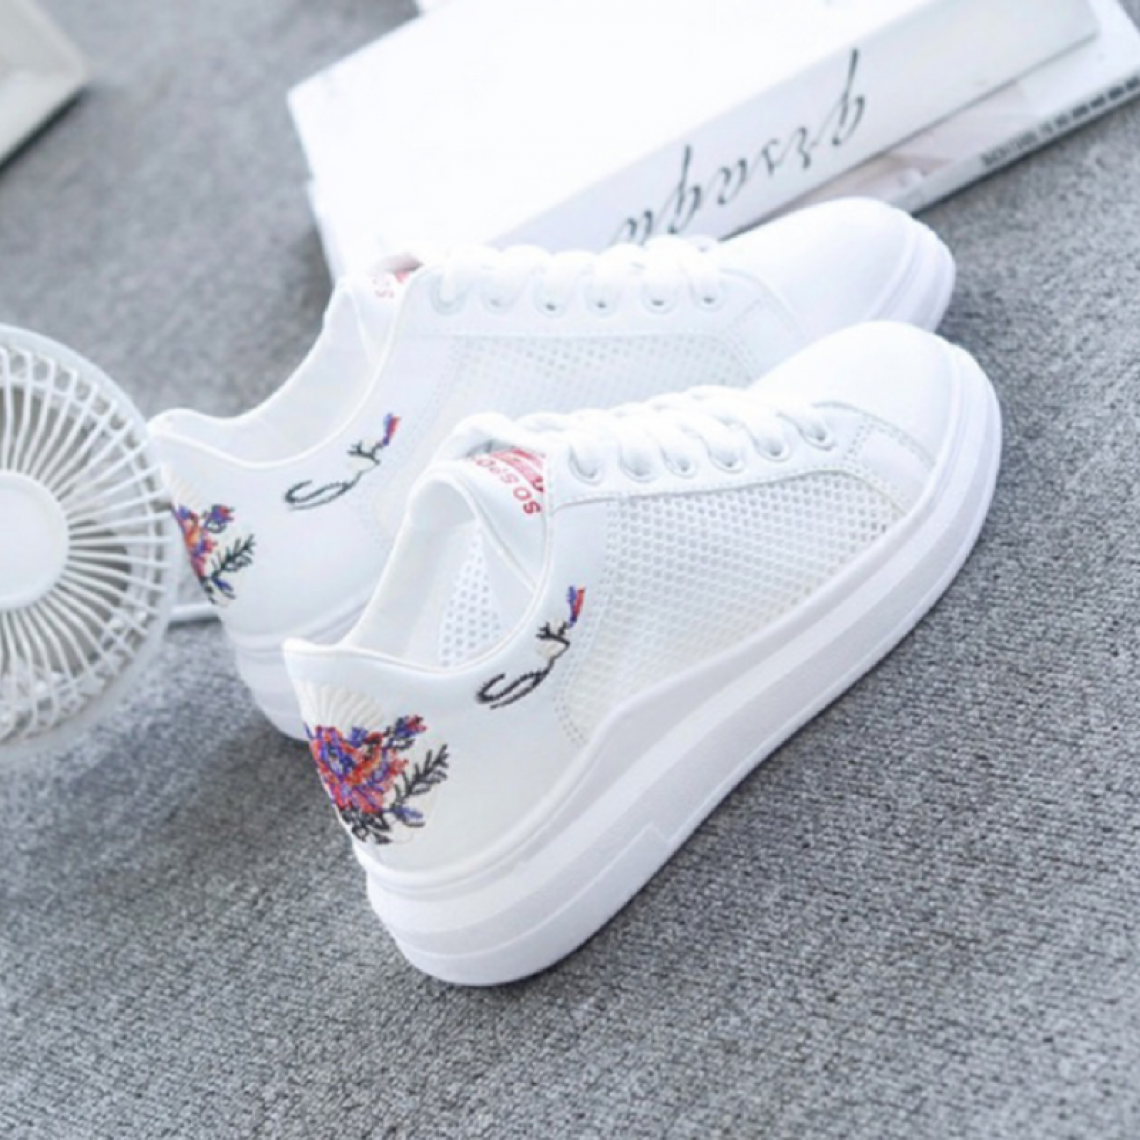 białe buty sneakers